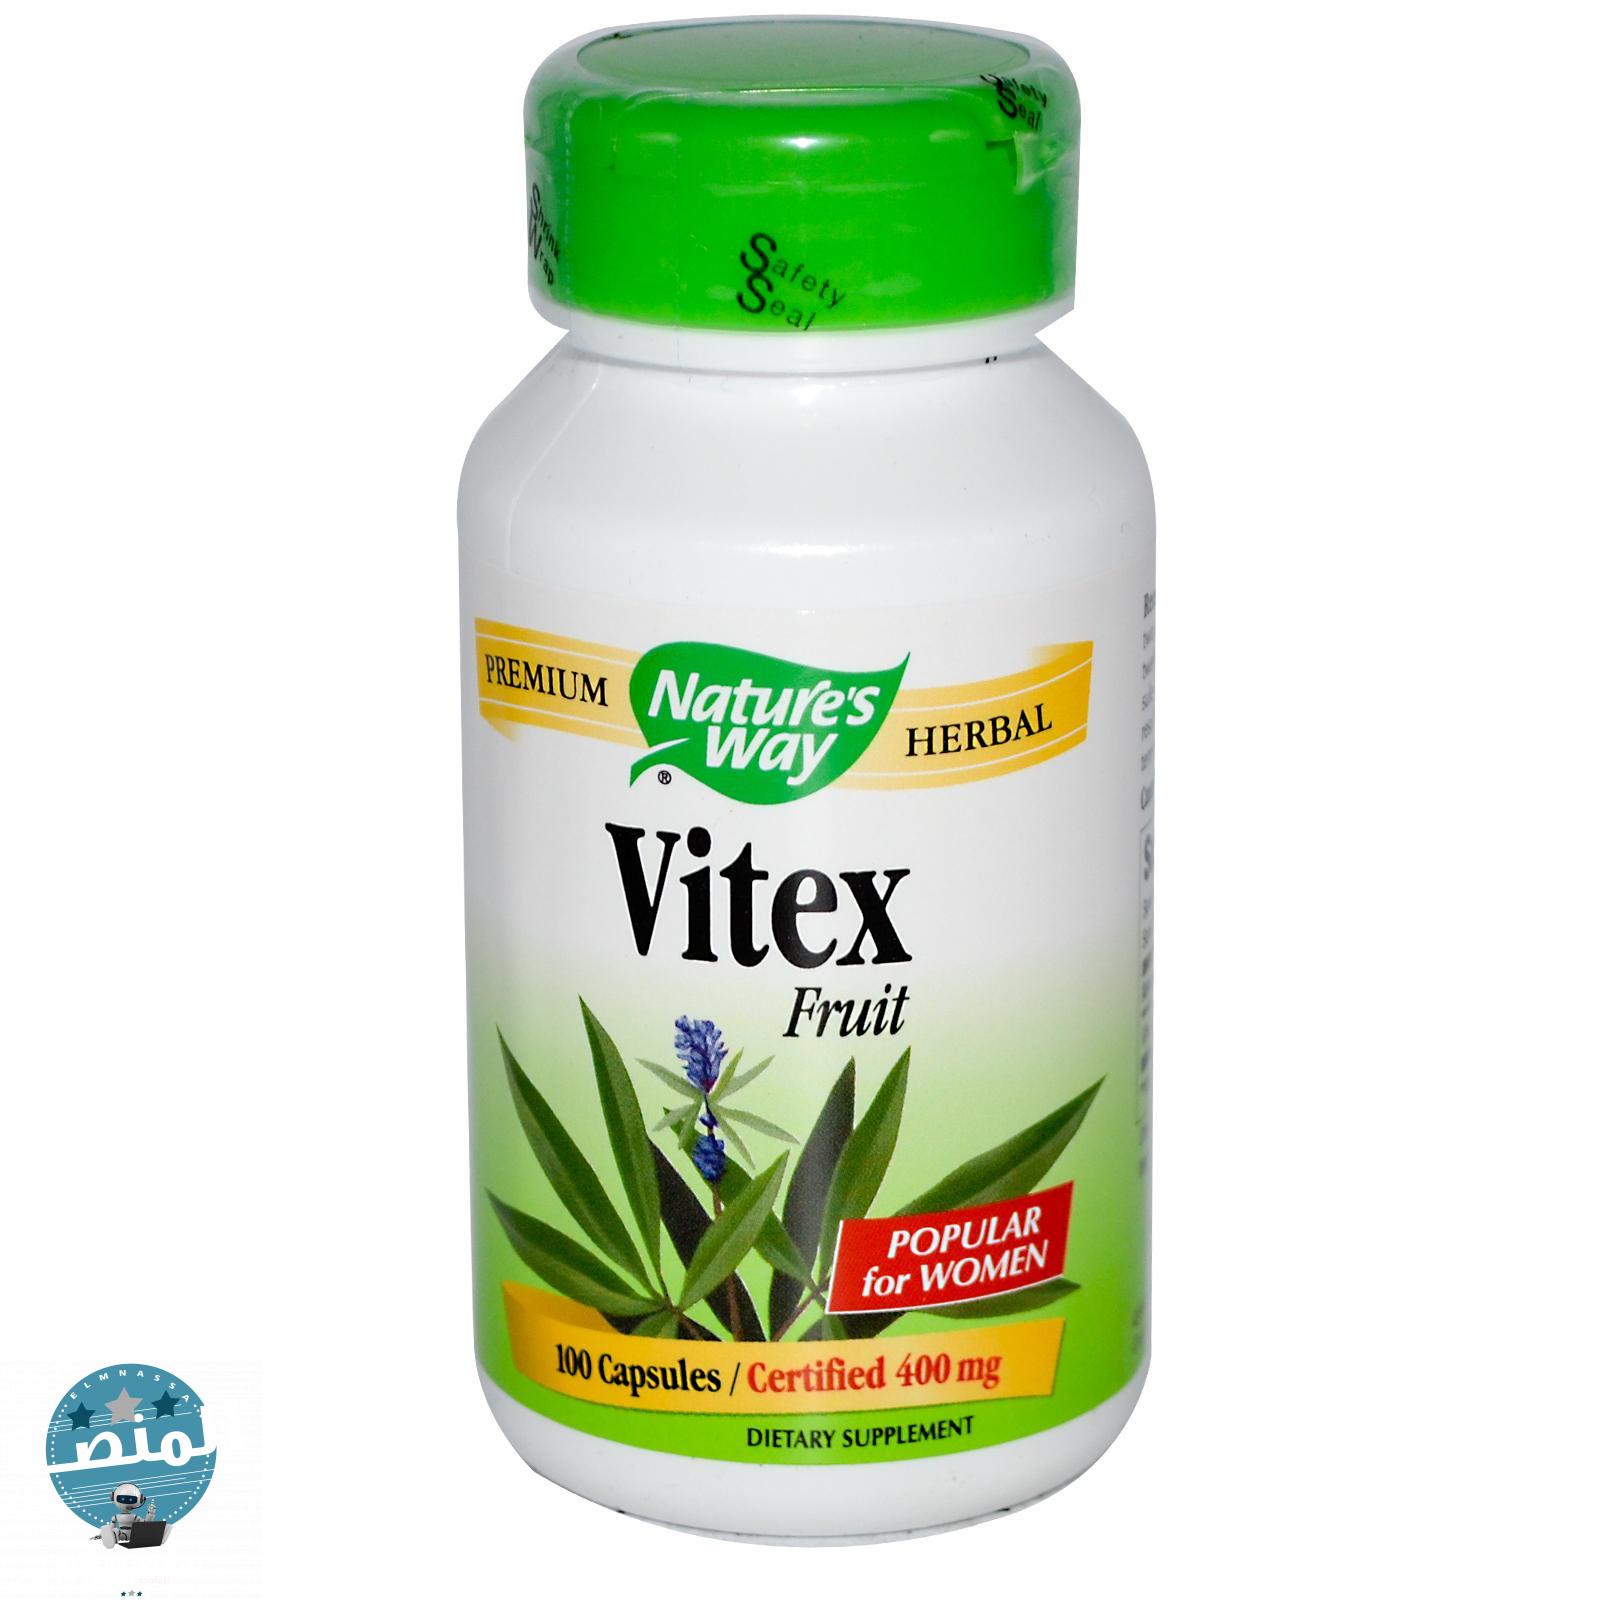 ما هو دور الفيتكس في علاج التهاب المبايض والرحم بالأعشاب؟